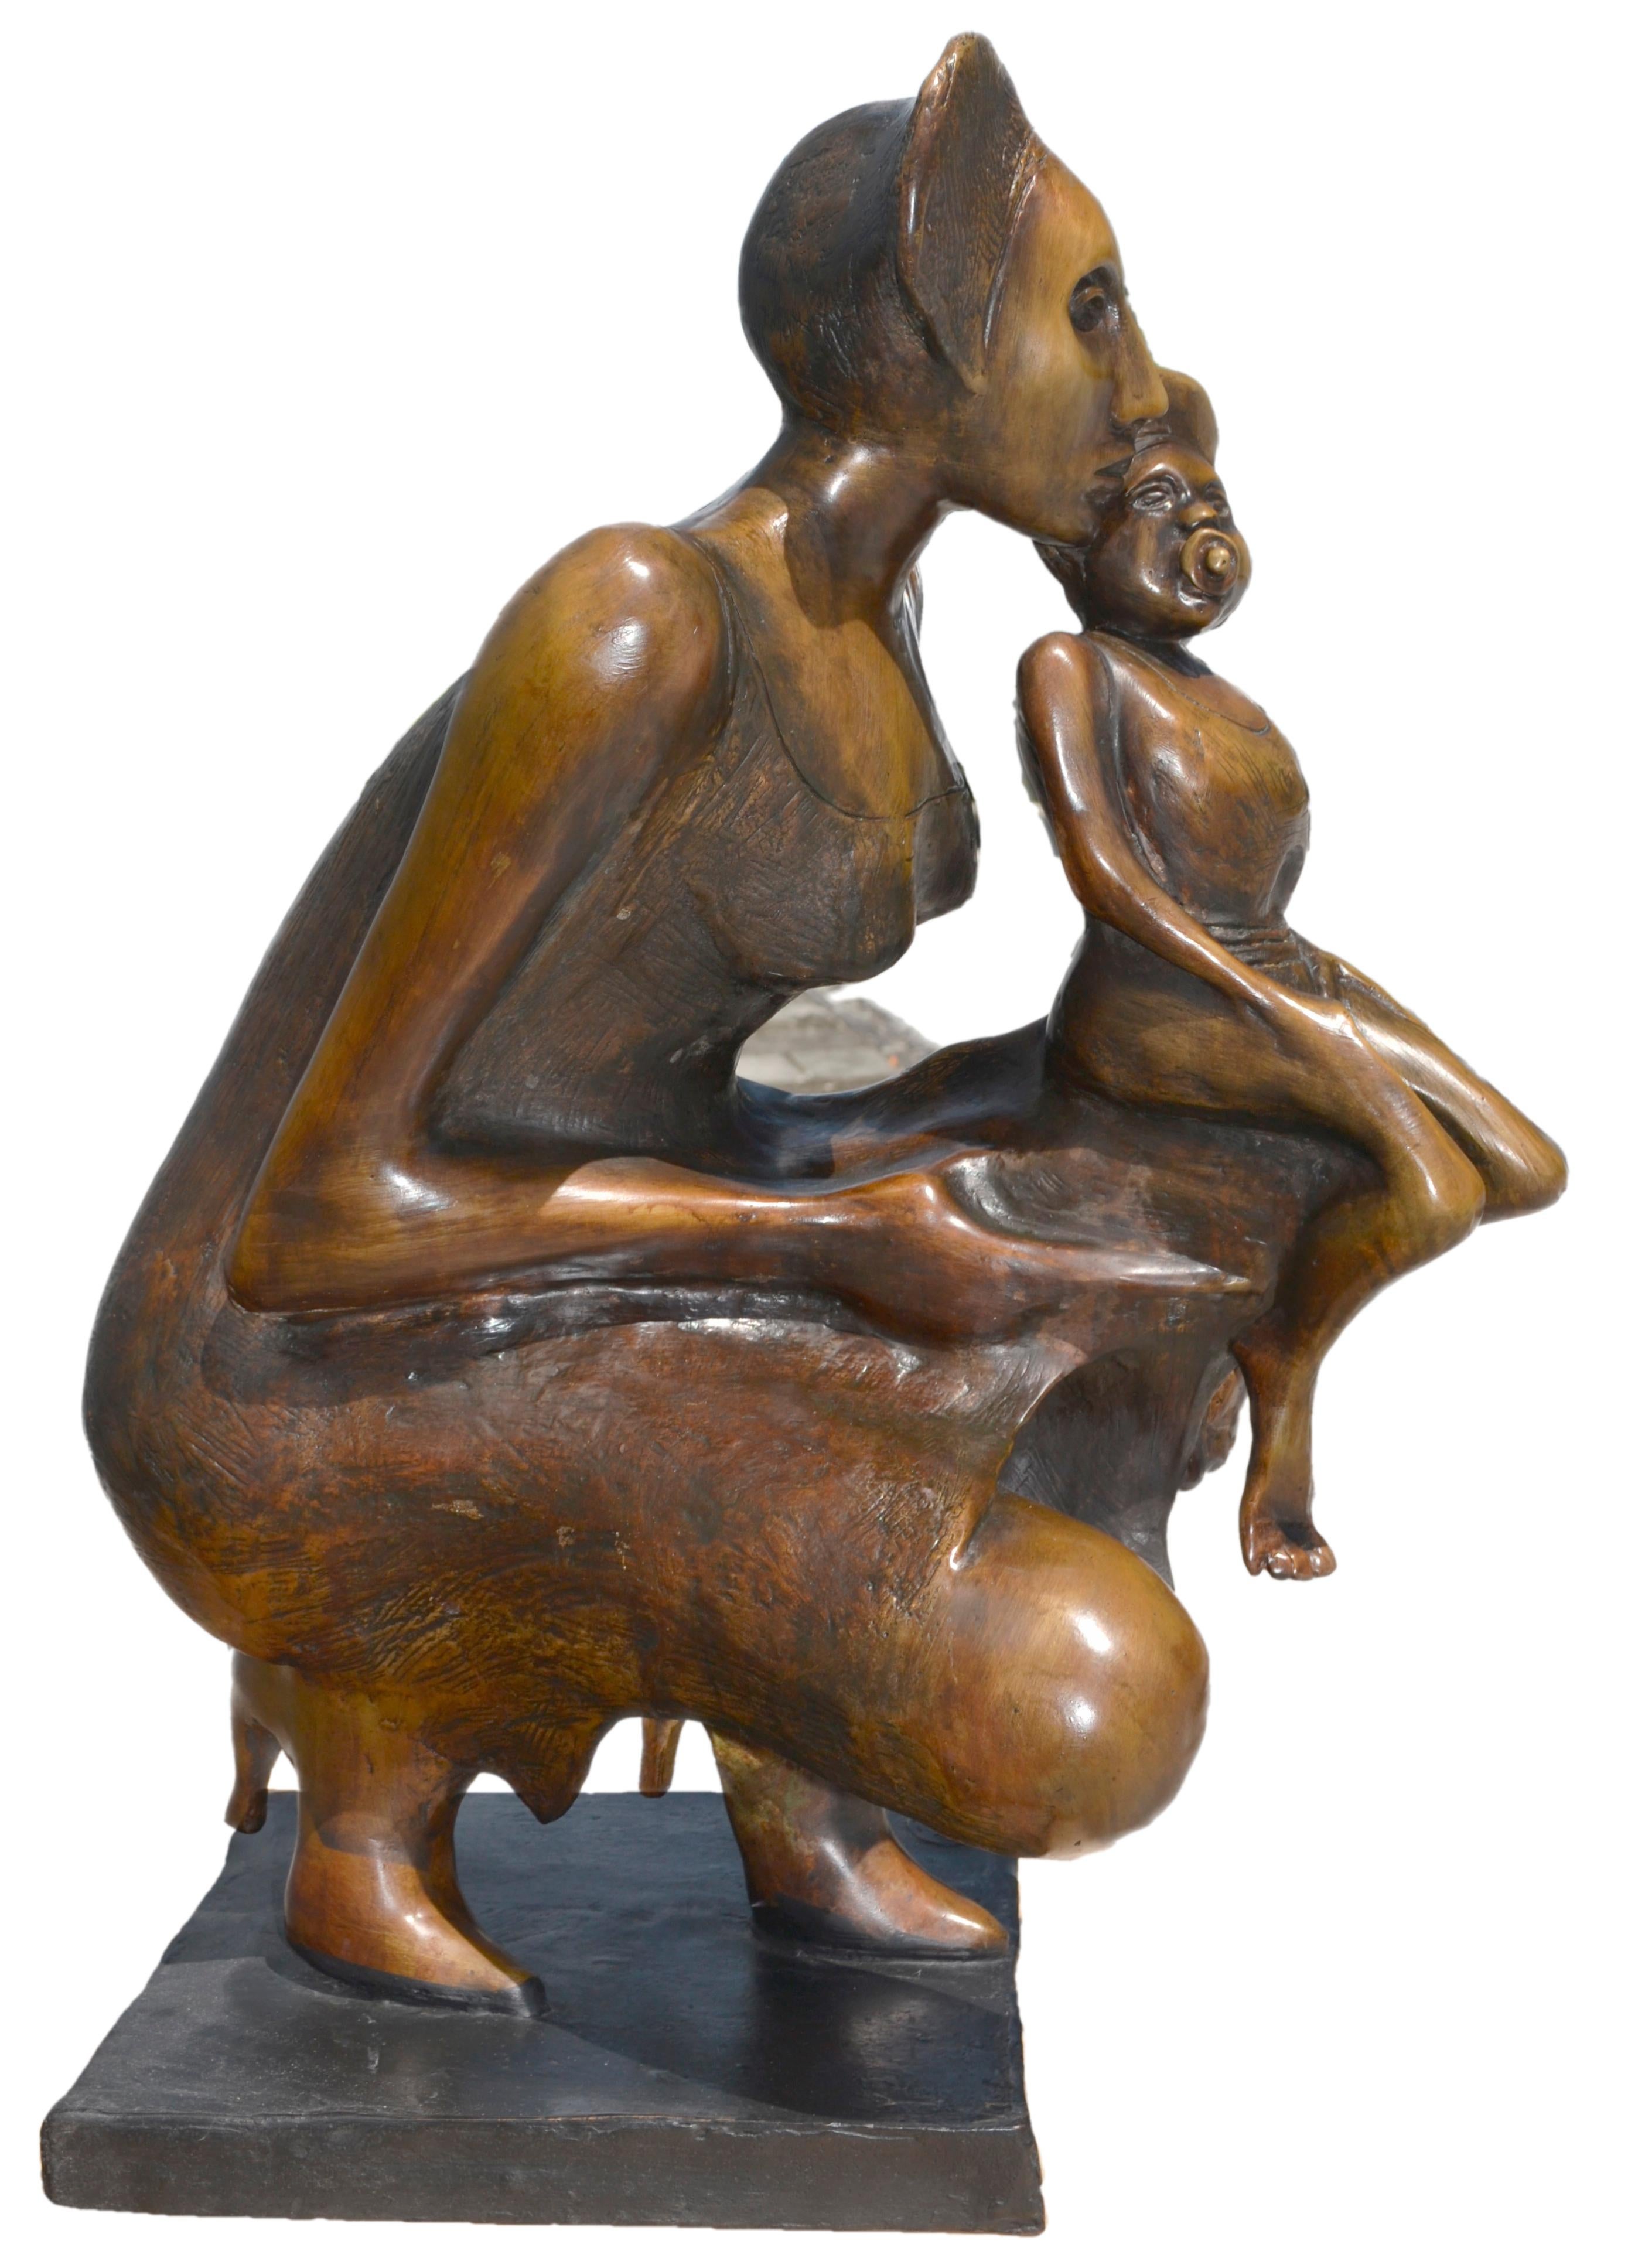 Jorge Seguí
Esperansilla, 2003
Bronze, Edition 1/7 + 3AP
71.1 x 40,6 x 30,4 cm  28 x 16 x 12 in.
Signé et numéroté.

Jorge Seguí né en 1945, Argentine. Il a fréquenté l'école des beaux-arts d'Argentine, avec une spécialisation en sculpture, à